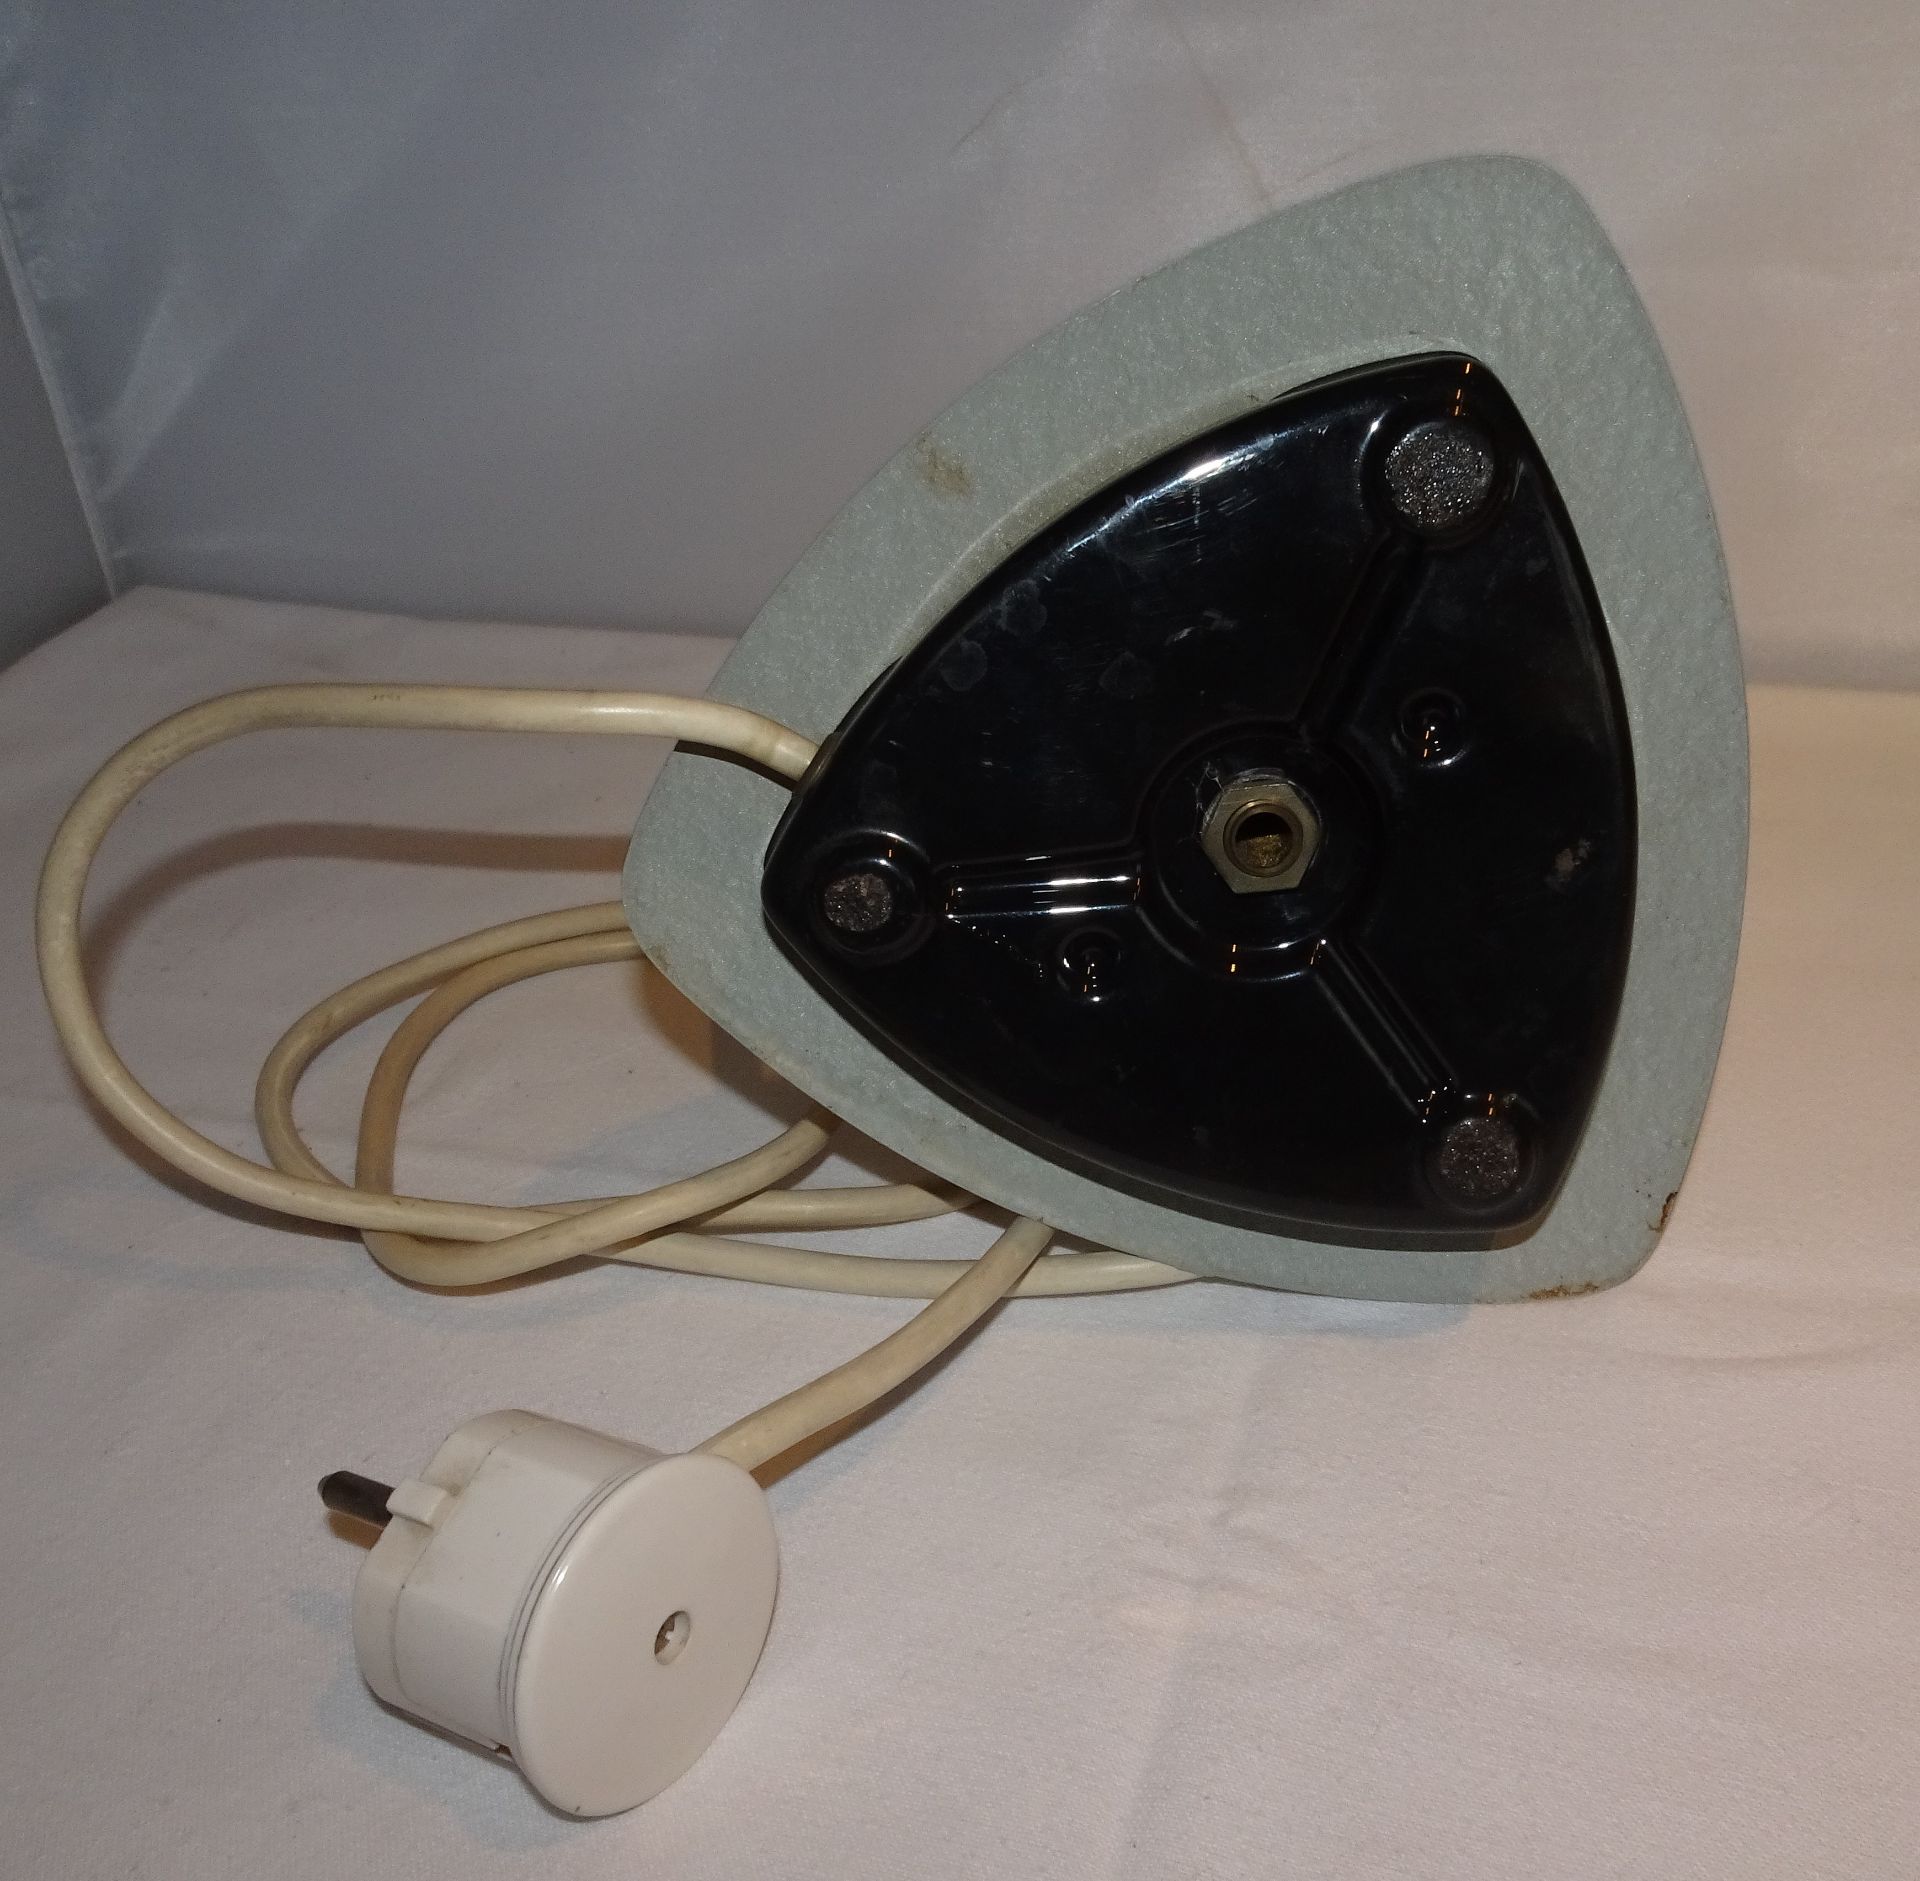 1 Tüten-Nachttischlampe mit Plastikschirm und Dimmer. Voll funktionstüchtig. Selten! - Bild 4 aus 5